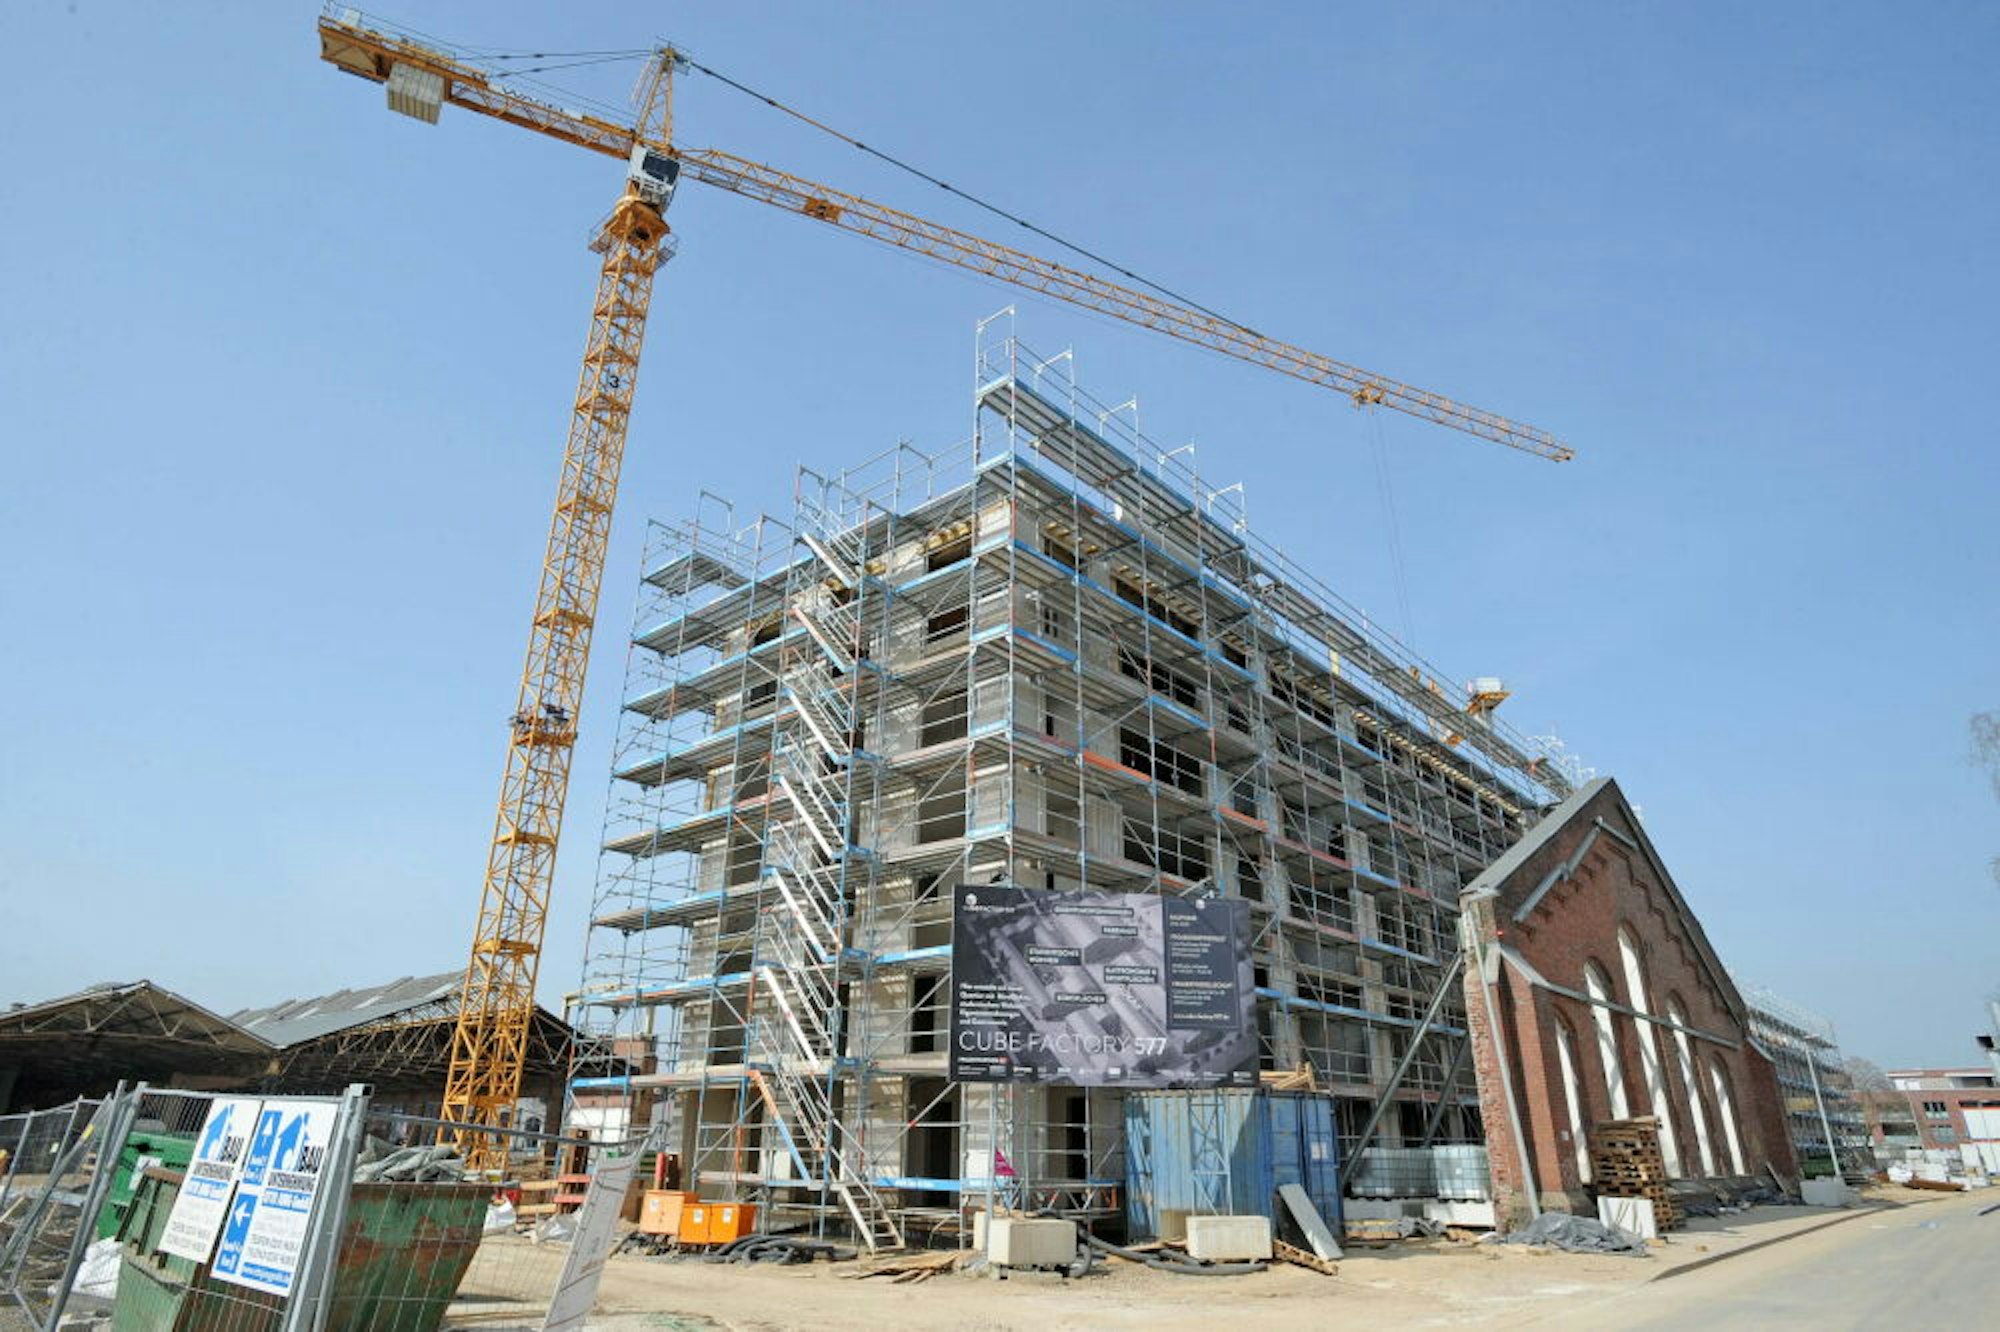 Ein Wohnhaus des Großprojektes Cube Factory 577 wächst hinter dem alten Fassadenteil der Eisenbahn-Halle zügig in die Höhe.